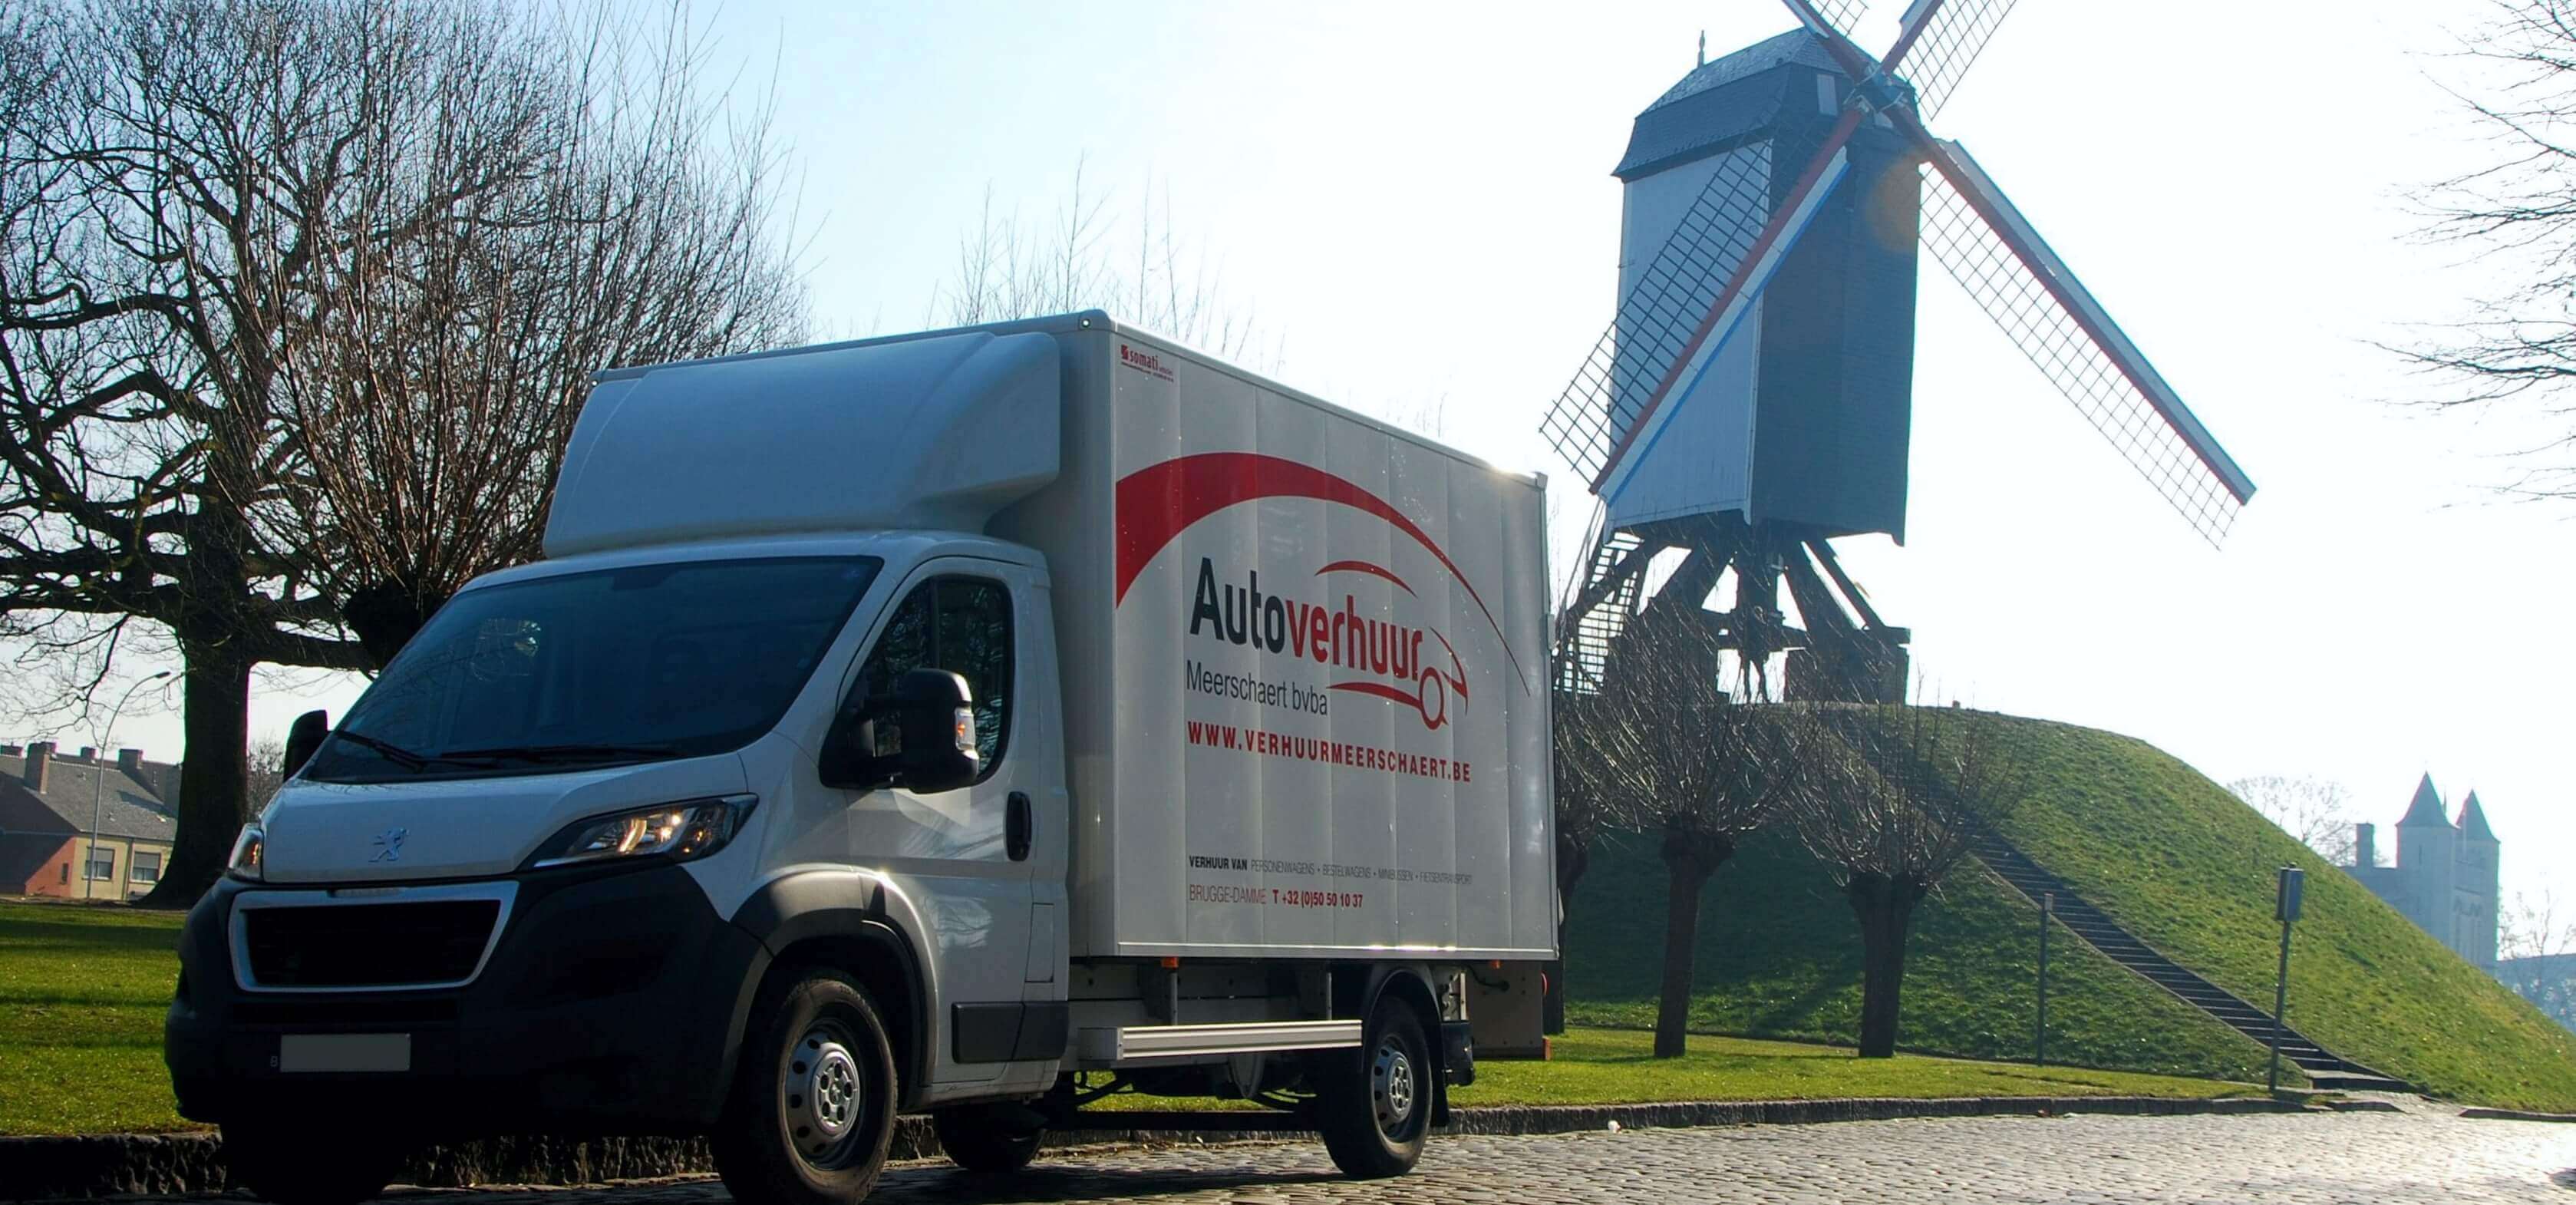 Een grote huurwagen bestelwagen met laadklep voor fietsvakanties inclusief GPS airco bluetooth cruise control. Foto Brugge